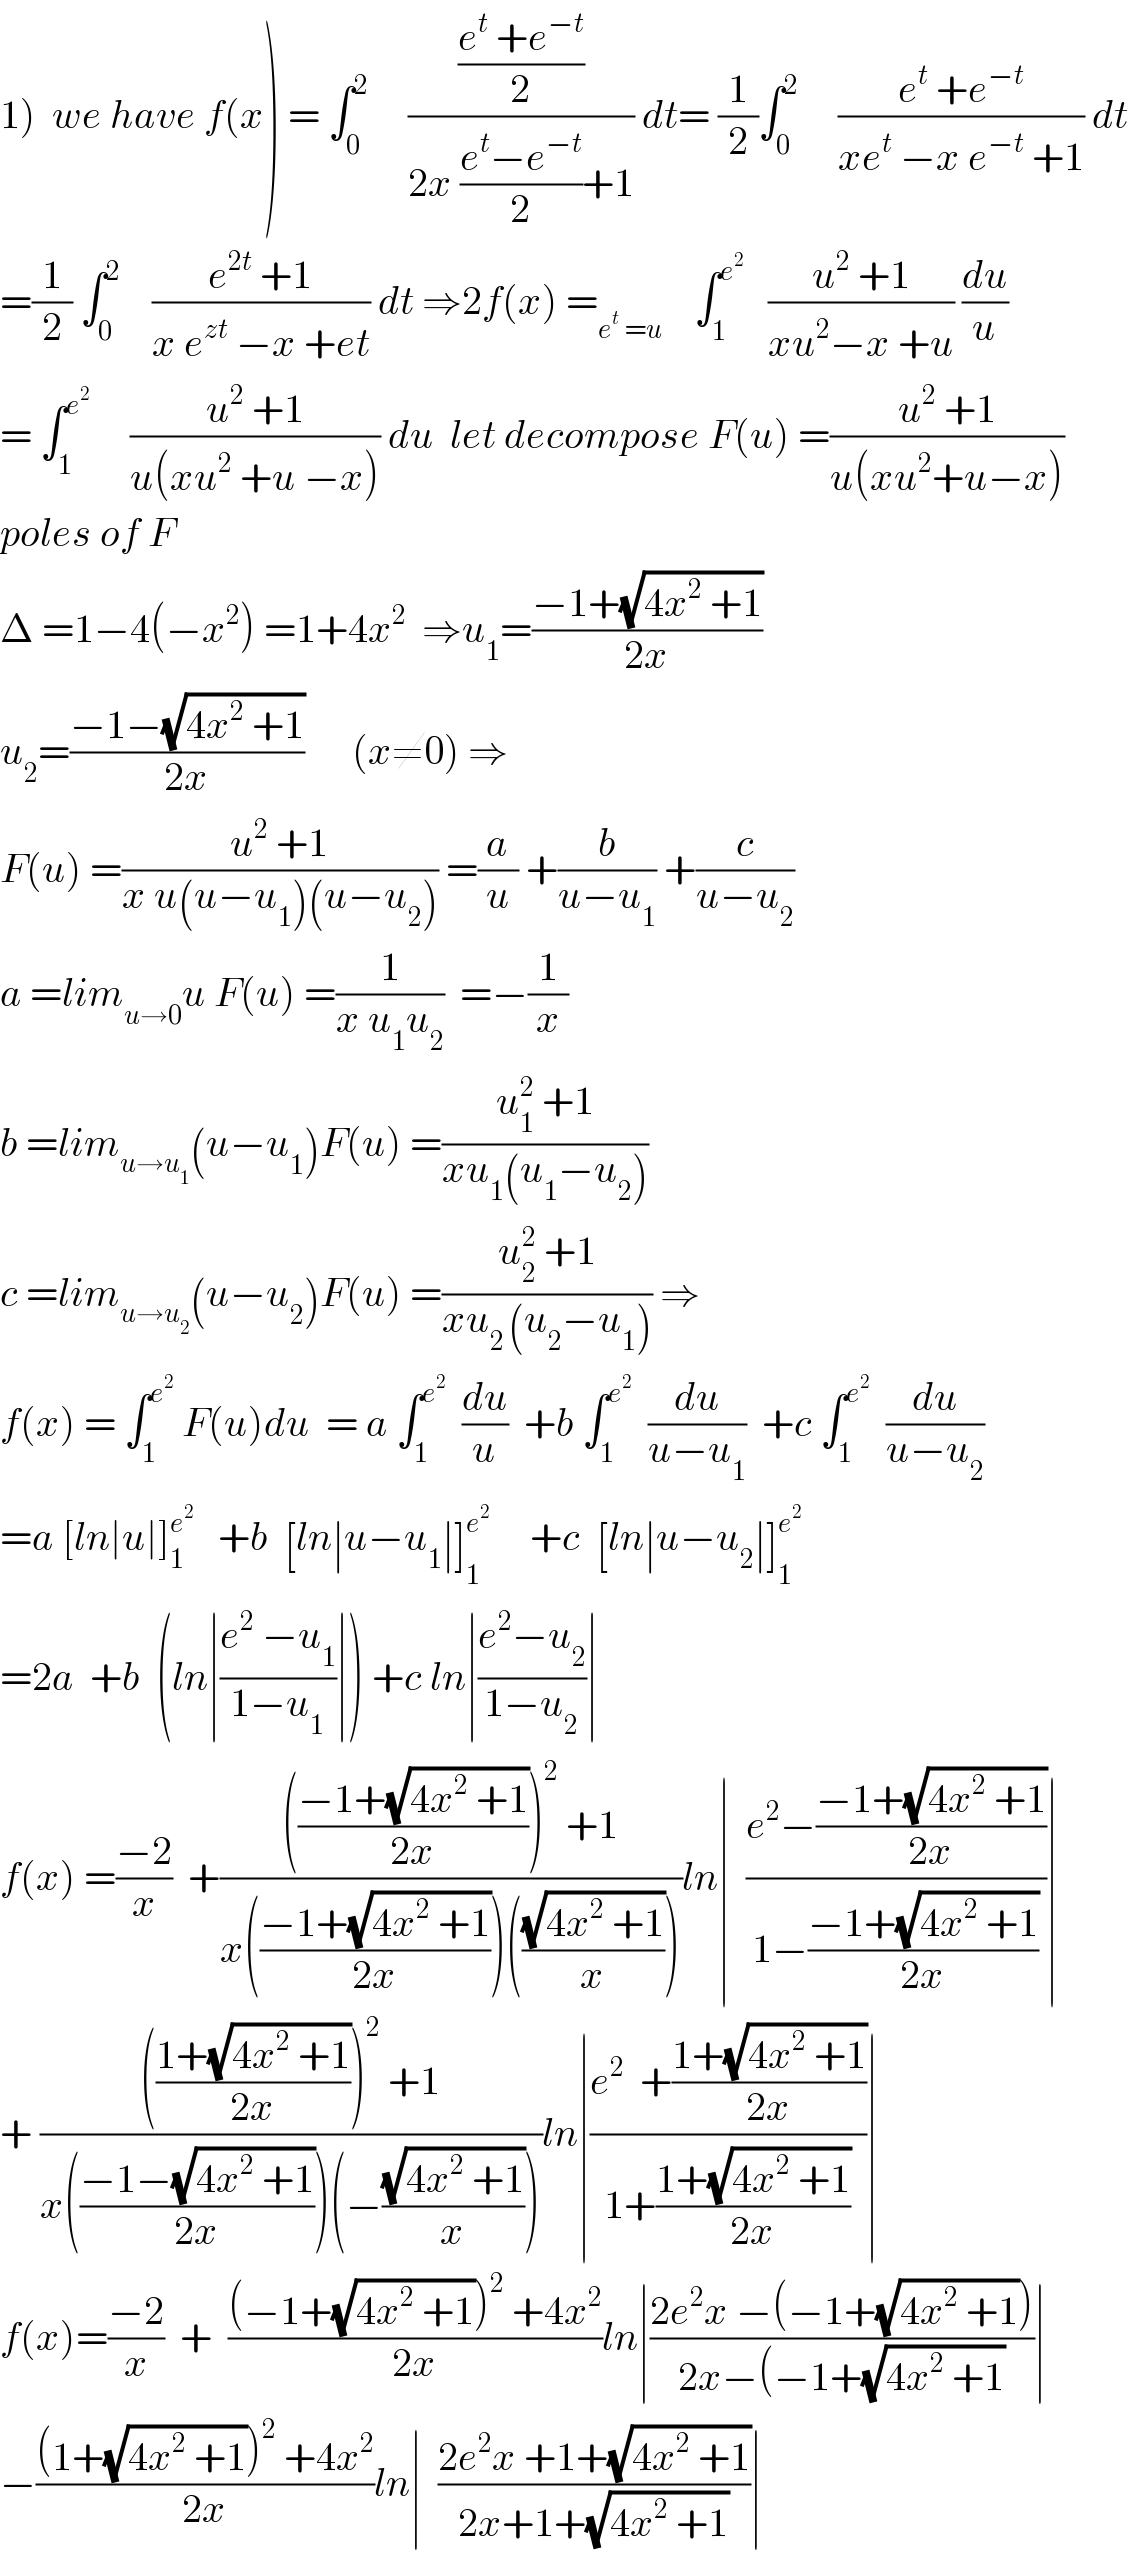 1)  we have f(x) = ∫_0 ^2      (((e^t  +e^(−t) )/2)/(2x ((e^t −e^(−t) )/2)+1)) dt= (1/2)∫_0 ^2      ((e^t  +e^(−t) )/(xe^t  −x e^(−t)  +1)) dt  =(1/2) ∫_0 ^2     ((e^(2t)  +1)/(x e^(zt)  −x +et)) dt ⇒2f(x) =_(e^t  =u)     ∫_1 ^e^2     ((u^2  +1)/(xu^2 −x +u)) (du/u)  = ∫_1 ^e^2       ((u^2  +1)/(u(xu^2  +u −x))) du  let decompose F(u) =((u^2  +1)/(u(xu^2 +u−x)))  poles of F  Δ =1−4(−x^2 ) =1+4x^2   ⇒u_1 =((−1+(√(4x^2  +1)))/(2x))  u_2 =((−1−(√(4x^2  +1)))/(2x))      (x≠0) ⇒  F(u) =((u^2  +1)/(x u(u−u_1 )(u−u_2 ))) =(a/u) +(b/(u−u_1 )) +(c/(u−u_2 ))  a =lim_(u→0) u F(u) =(1/(x u_1 u_2 ))  =−(1/x)  b =lim_(u→u_1 ) (u−u_1 )F(u) =((u_1 ^2  +1)/(xu_1 (u_1 −u_2 )))  c =lim_(u→u_2 ) (u−u_2 )F(u) =((u_2 ^2  +1)/(xu_(2 ) (u_2 −u_1 ))) ⇒  f(x) = ∫_1 ^e^2   F(u)du  = a ∫_1 ^e^2    (du/u)  +b ∫_1 ^e^2    (du/(u−u_1 ))  +c ∫_1 ^e^2    (du/(u−u_2 ))  =a [ln∣u∣]_1 ^e^2     +b  [ln∣u−u_1 ∣]_(1 ) ^e^2       +c  [ln∣u−u_2 ∣]_1 ^e^2    =2a  +b  (ln∣((e^2  −u_1 )/(1−u_1 ))∣) +c ln∣((e^2 −u_2 )/(1−u_2 ))∣  f(x) =((−2)/x)  +(((((−1+(√(4x^2  +1)))/(2x)))^2  +1)/(x(((−1+(√(4x^2  +1)))/(2x)))(((√(4x^2  +1))/x))))ln∣  ((e^2 −((−1+(√(4x^2  +1)))/(2x)))/(1−((−1+(√(4x^2  +1)))/(2x))))∣  + (((((1+(√(4x^2  +1)))/(2x)))^2  +1)/(x(((−1−(√(4x^2  +1)))/(2x)))(−((√(4x^2  +1))/x))))ln∣((e^2   +((1+(√(4x^2  +1)))/(2x)))/(1+((1+(√(4x^2  +1)))/(2x))))∣  f(x)=((−2)/x)  +  (((−1+(√(4x^2  +1)))^2  +4x^2 )/(2x))ln∣((2e^2 x −(−1+(√(4x^2  +1))))/(2x−(−1+(√(4x^2  +1))))∣  −(((1+(√(4x^2  +1)))^2  +4x^2 )/(2x))ln∣  ((2e^2 x +1+(√(4x^2  +1)))/(2x+1+(√(4x^2  +1))))∣  